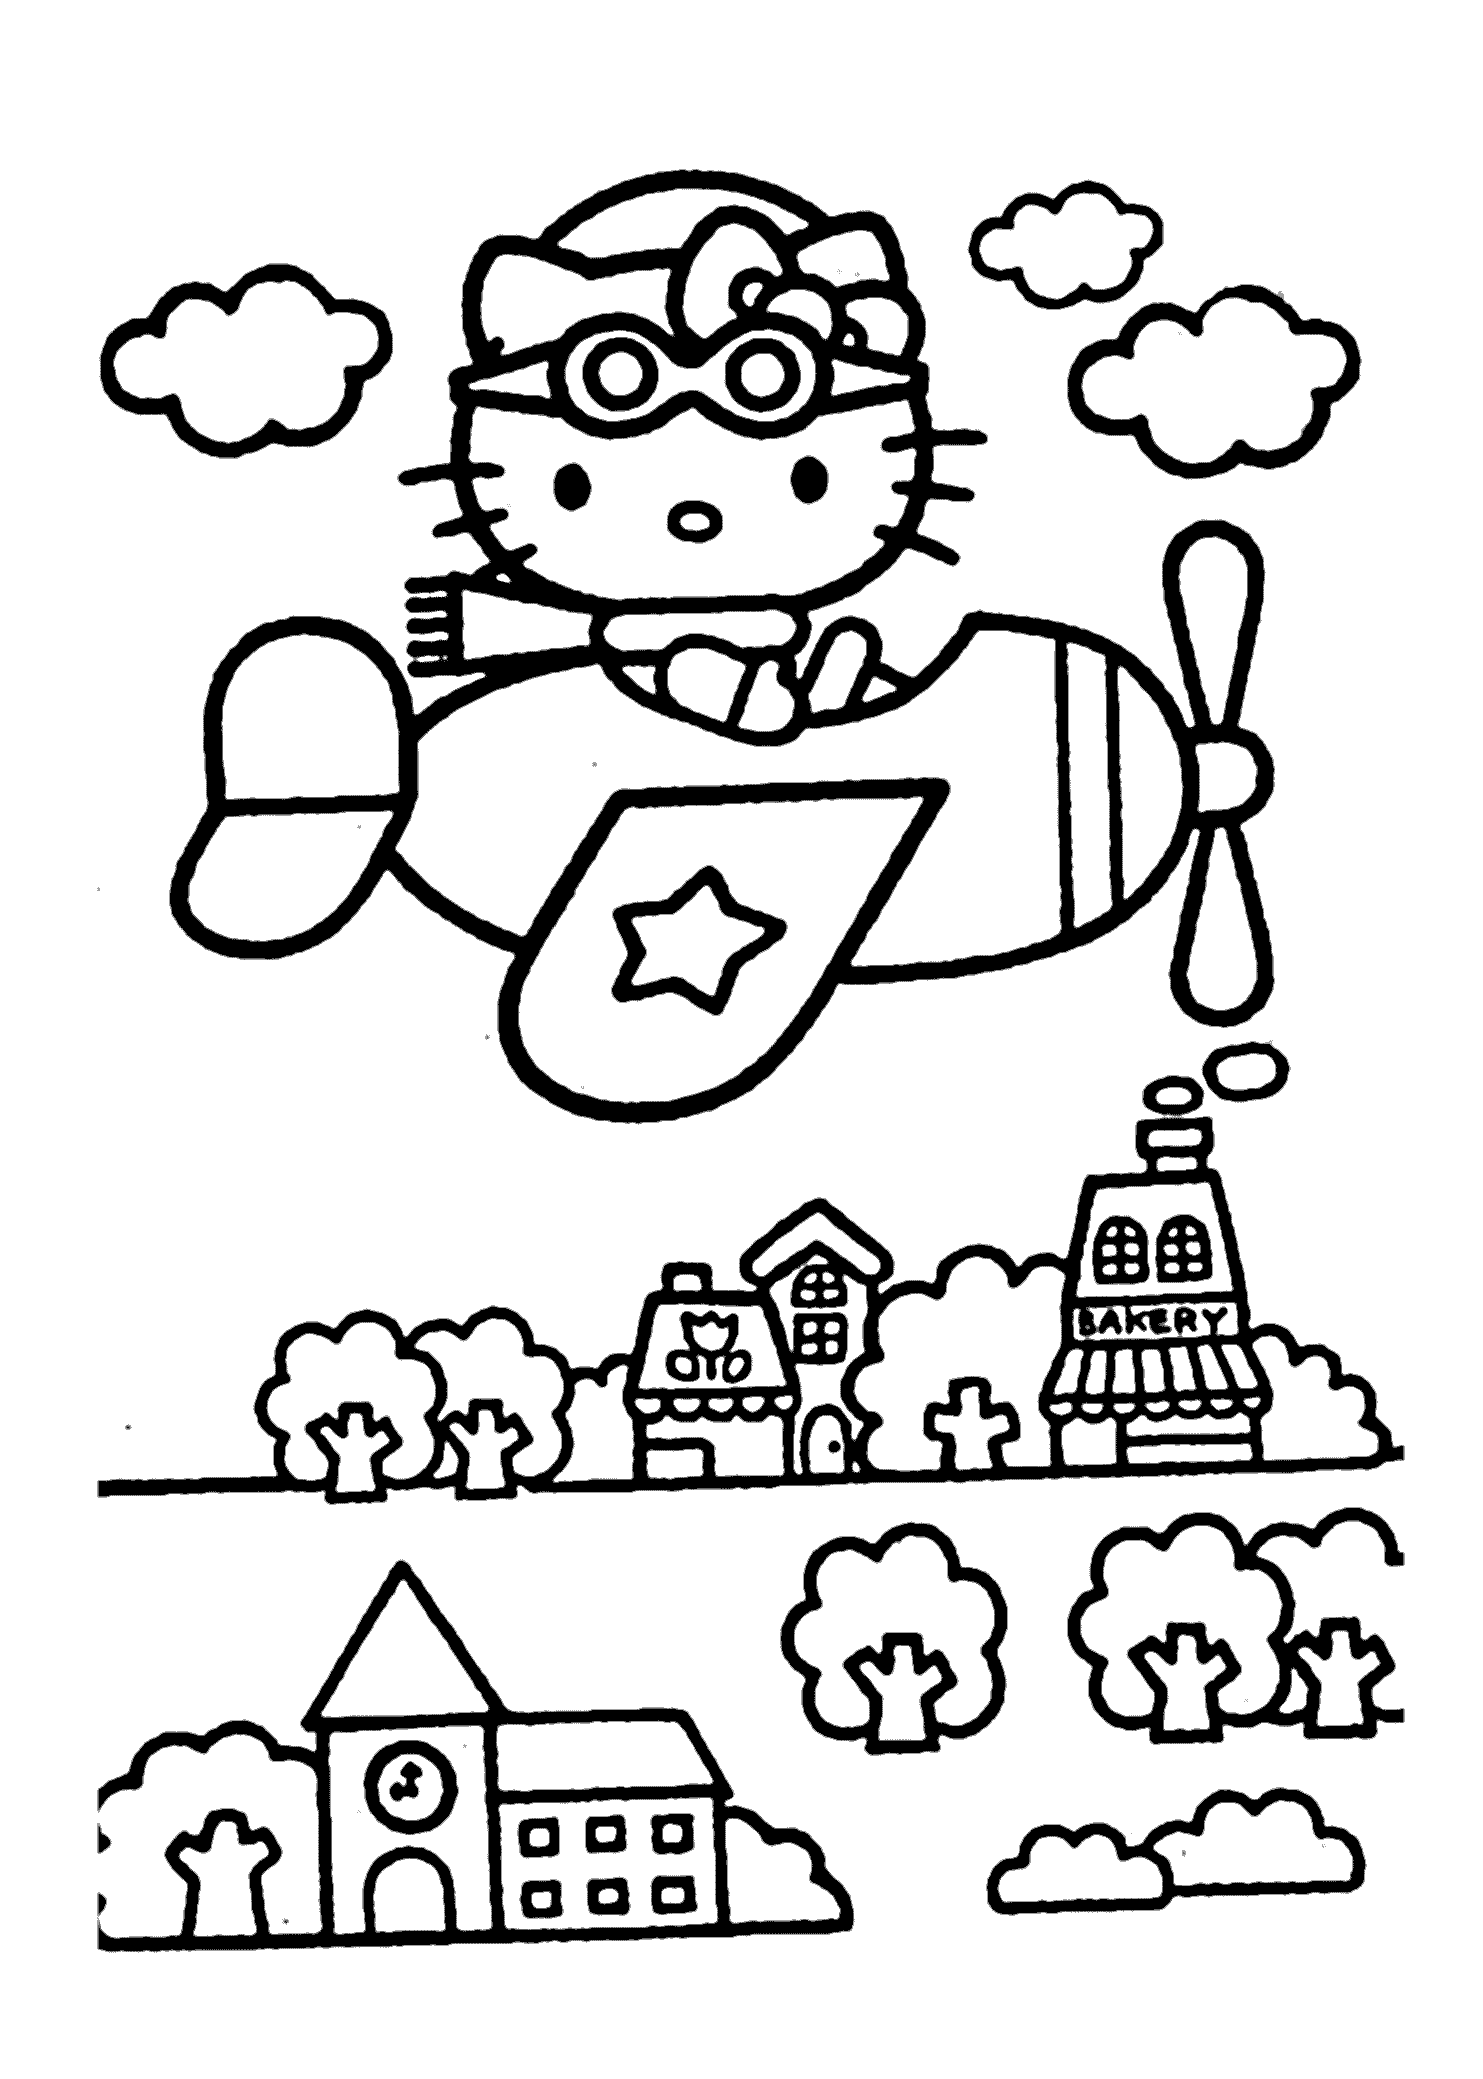 Nếu bạn là fan của Hello Kitty và thích vẽ tô màu, hãy đến ngay để tìm hiểu về bộ tranh tô màu Hello Kitty đáng yêu này. Bạn sẽ được tận hưởng những giây phút thư giãn thú vị và sáng tạo theo cách của riêng bạn.